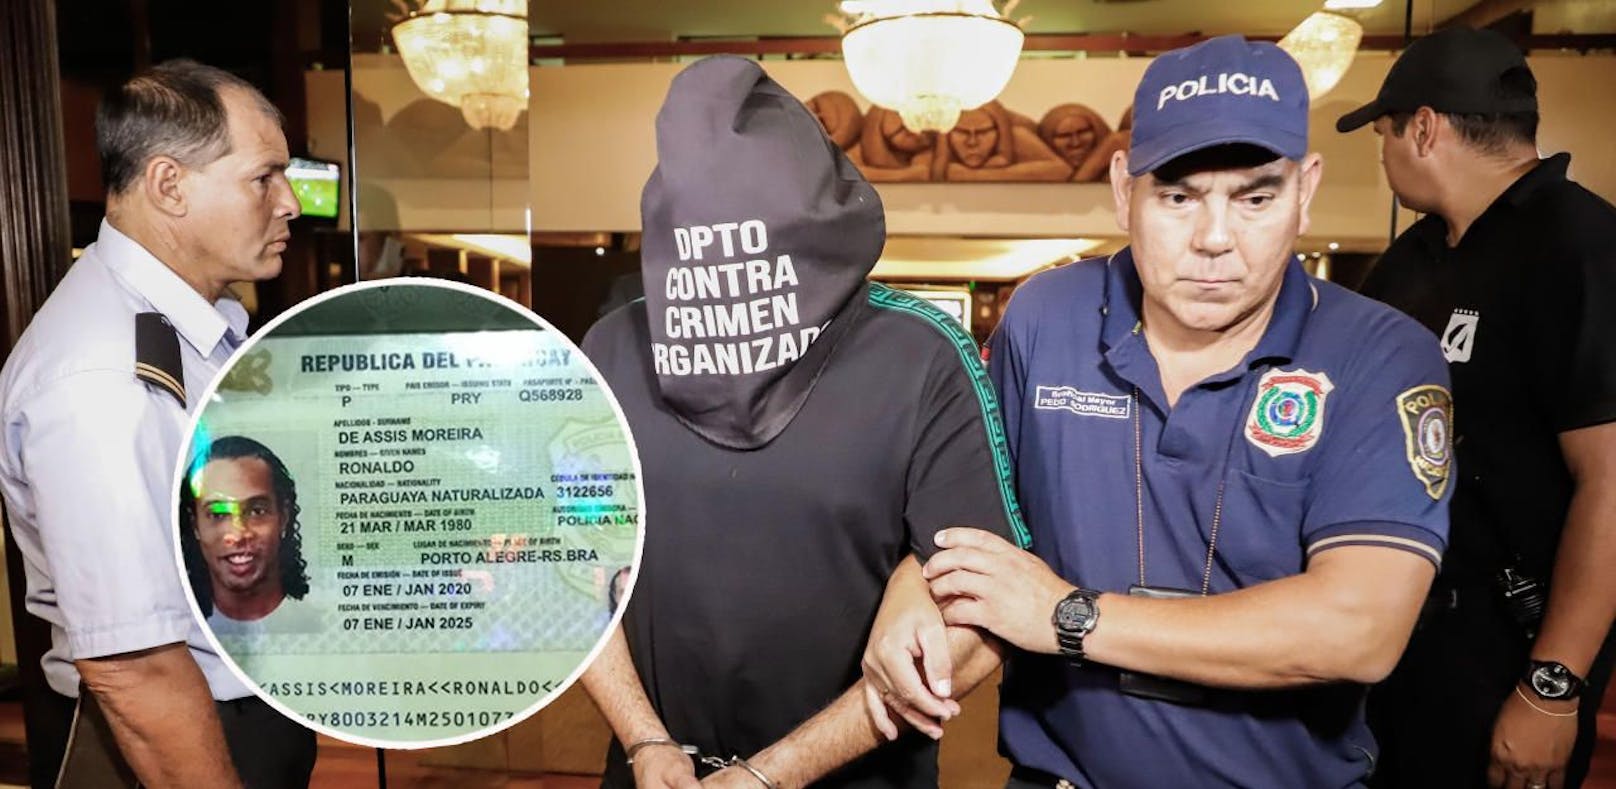 Ronaldinho und Roberto Gaucho wurden in einem Hotel in Paraguay verhaftet. Sie sollen gefälschte Dokumente vorgezeigt haben.